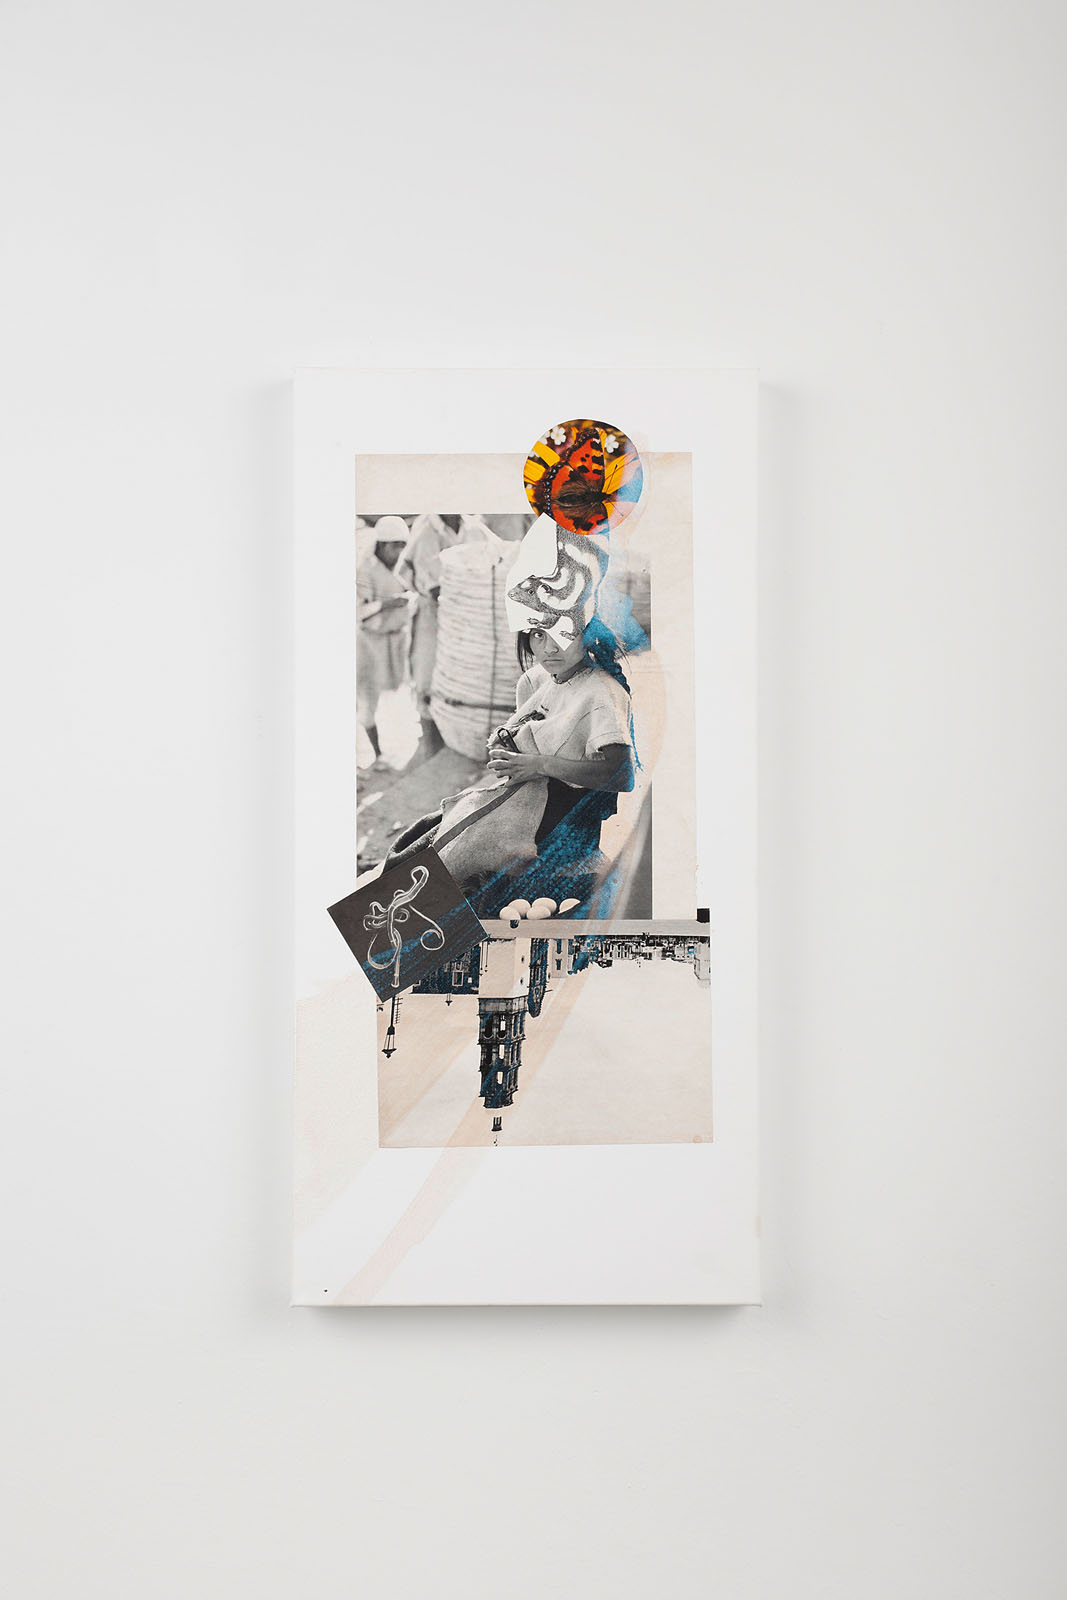 o.T. aus „Petrichor”, 2017, 60 x 30 cm, Mischtechnik & Collage auf Leinwand